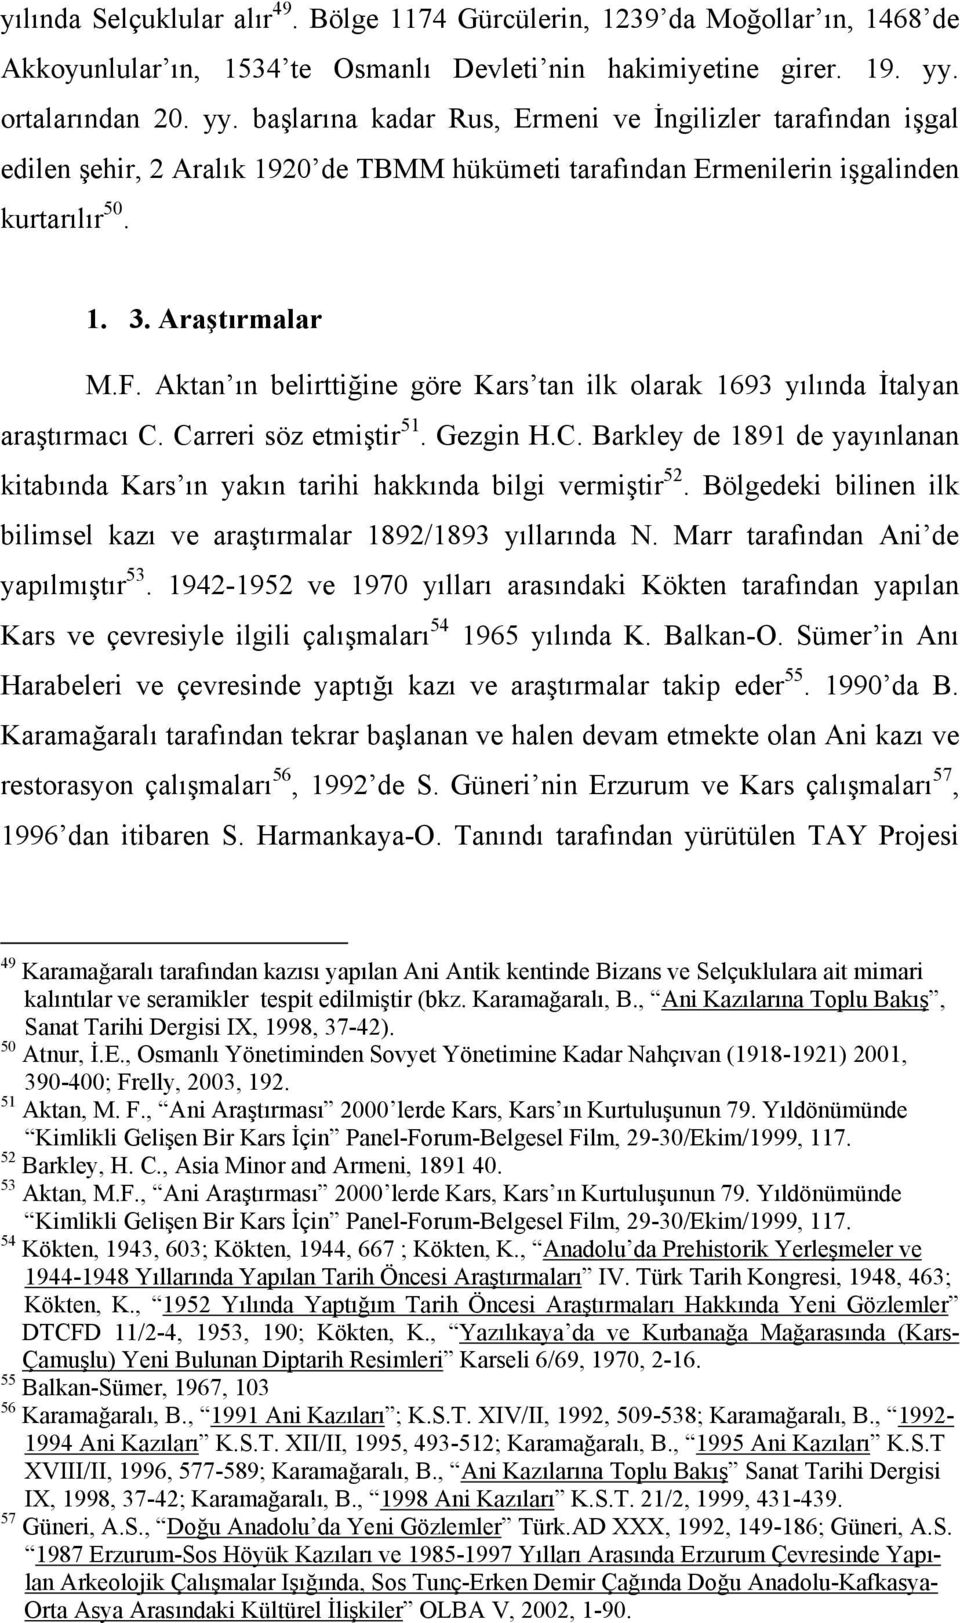 Aktan ın belirttiğine göre Kars tan ilk olarak 1693 yılında İtalyan araştırmacı C. Carreri söz etmiştir 51. Gezgin H.C. Barkley de 1891 de yayınlanan kitabında Kars ın yakın tarihi hakkında bilgi vermiştir 52.